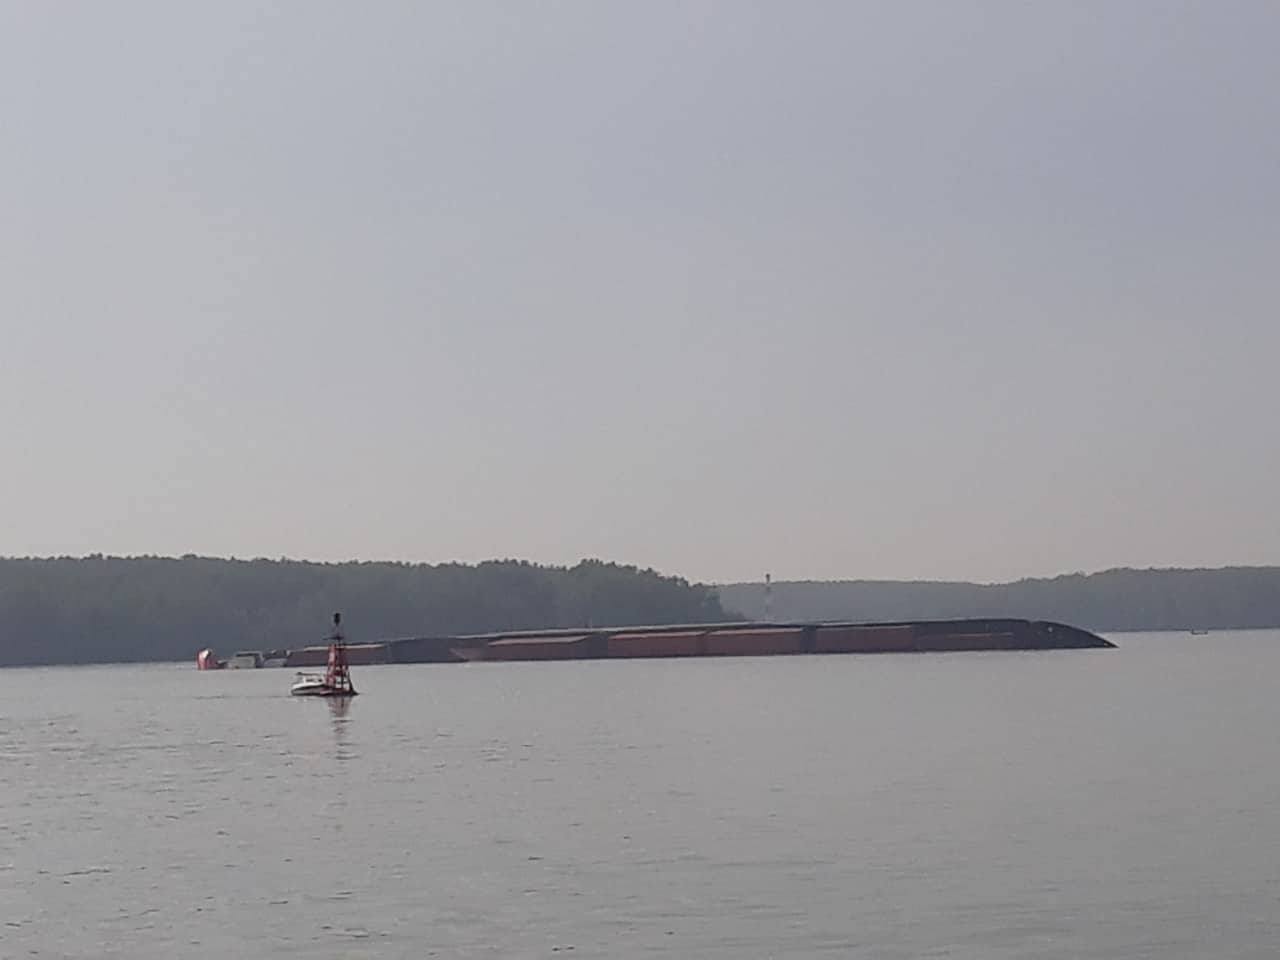 Hiện trường tàu chở hàng bị chìm ở sông Lòng Tàu